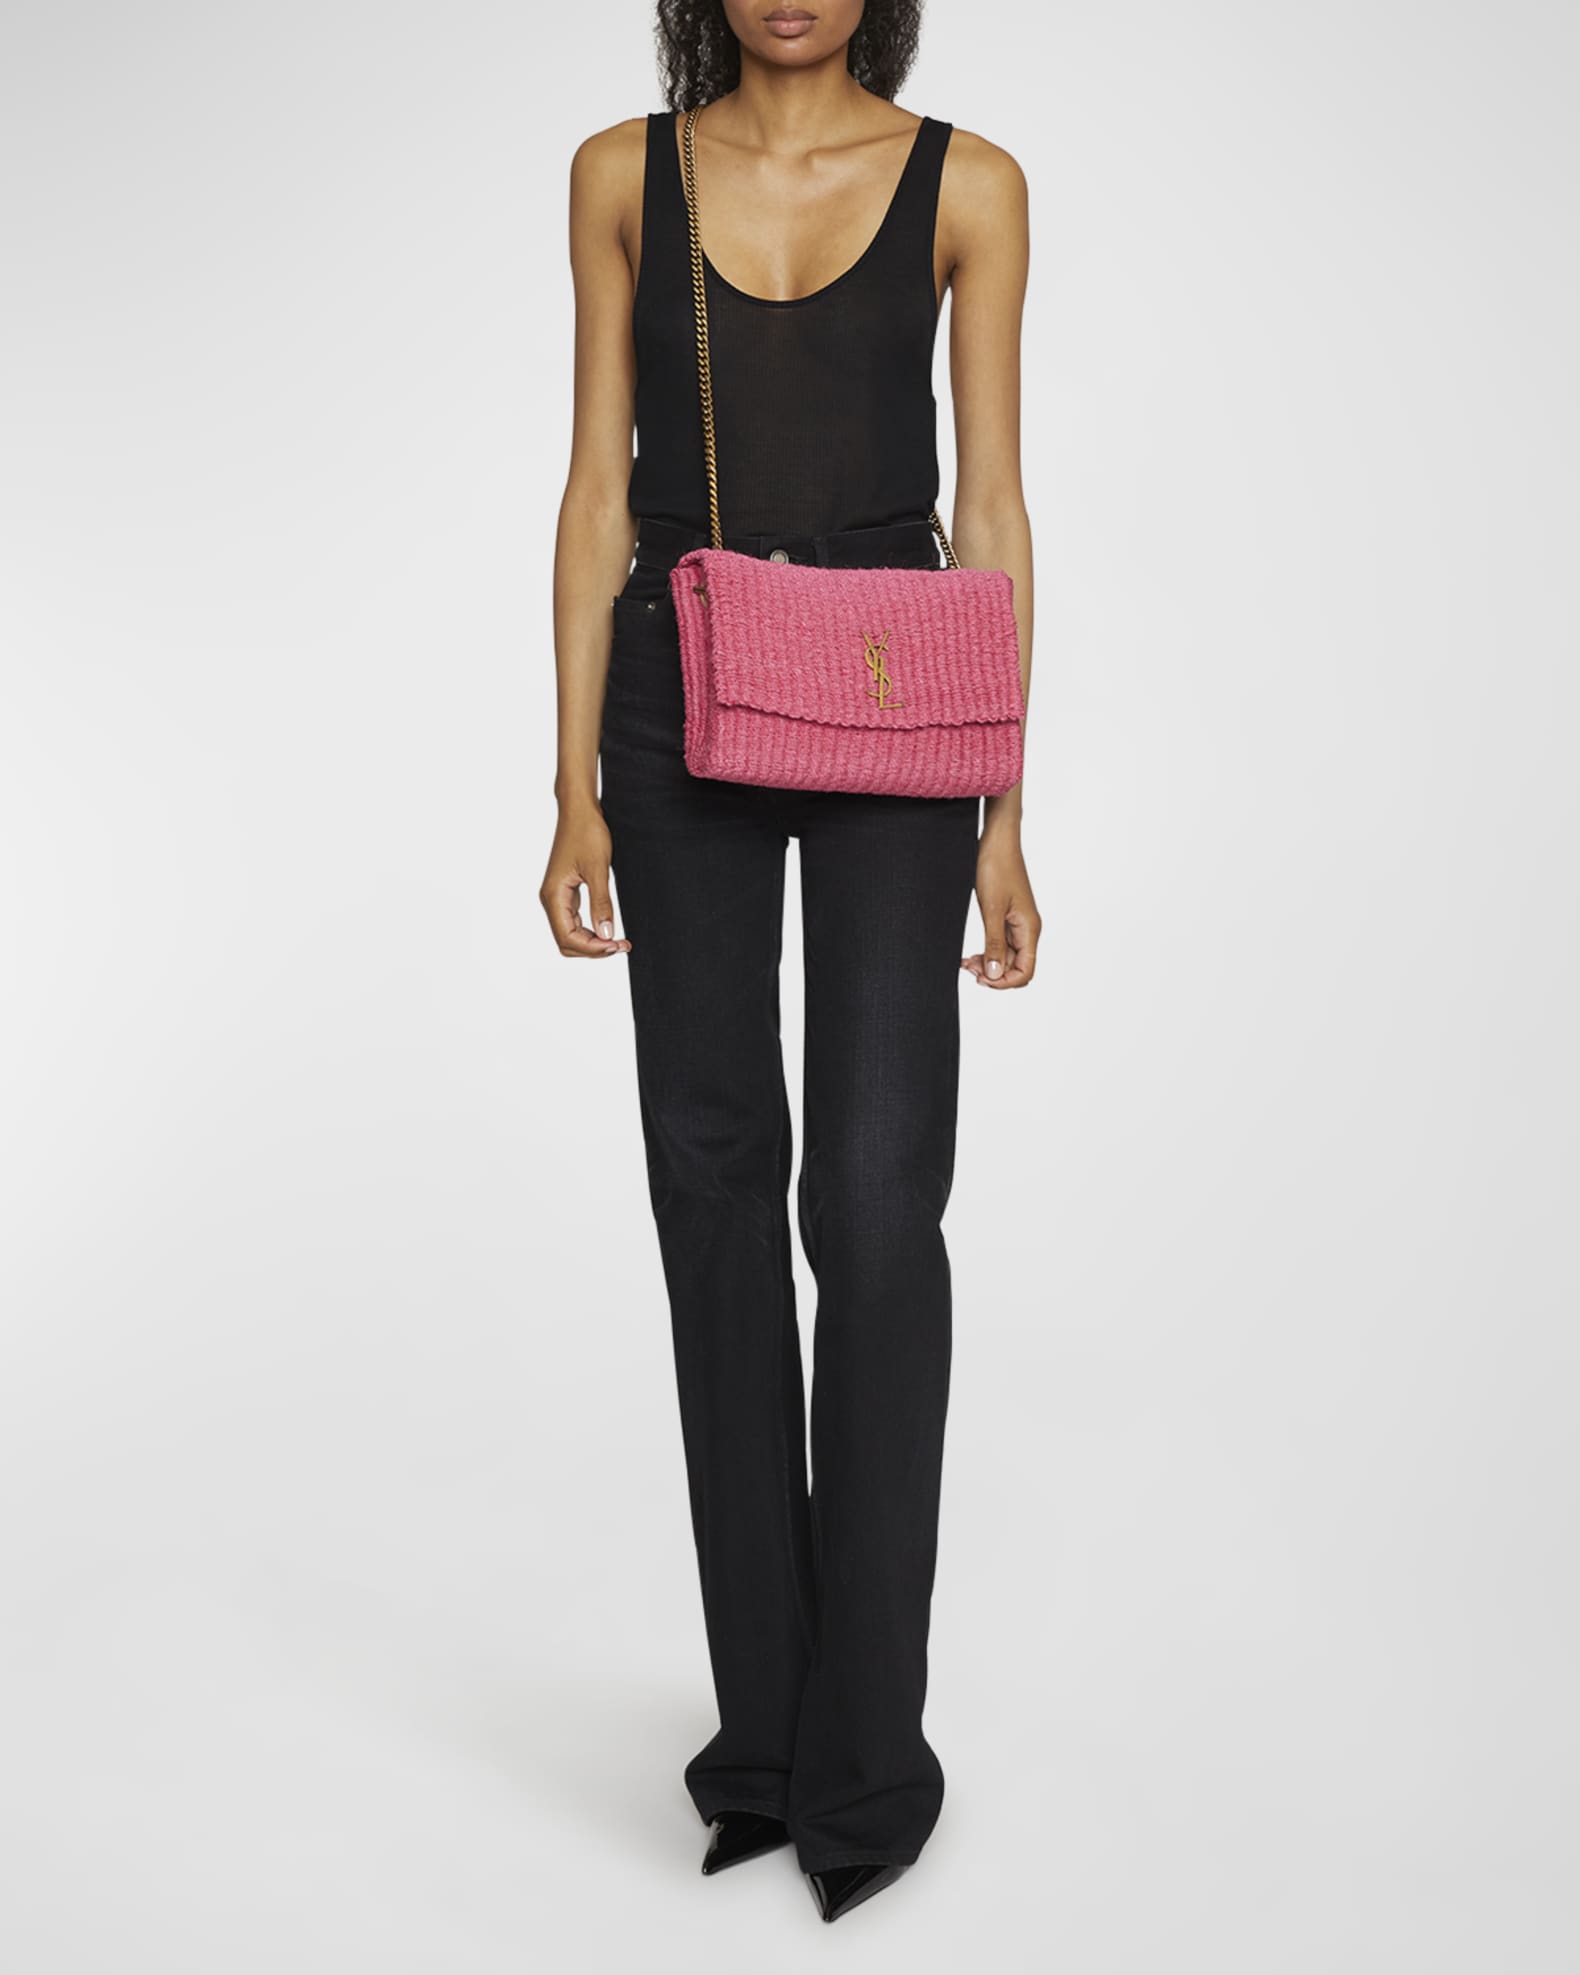 Pink Kate medium YSL-logo raffia shoulder bag, Saint Laurent